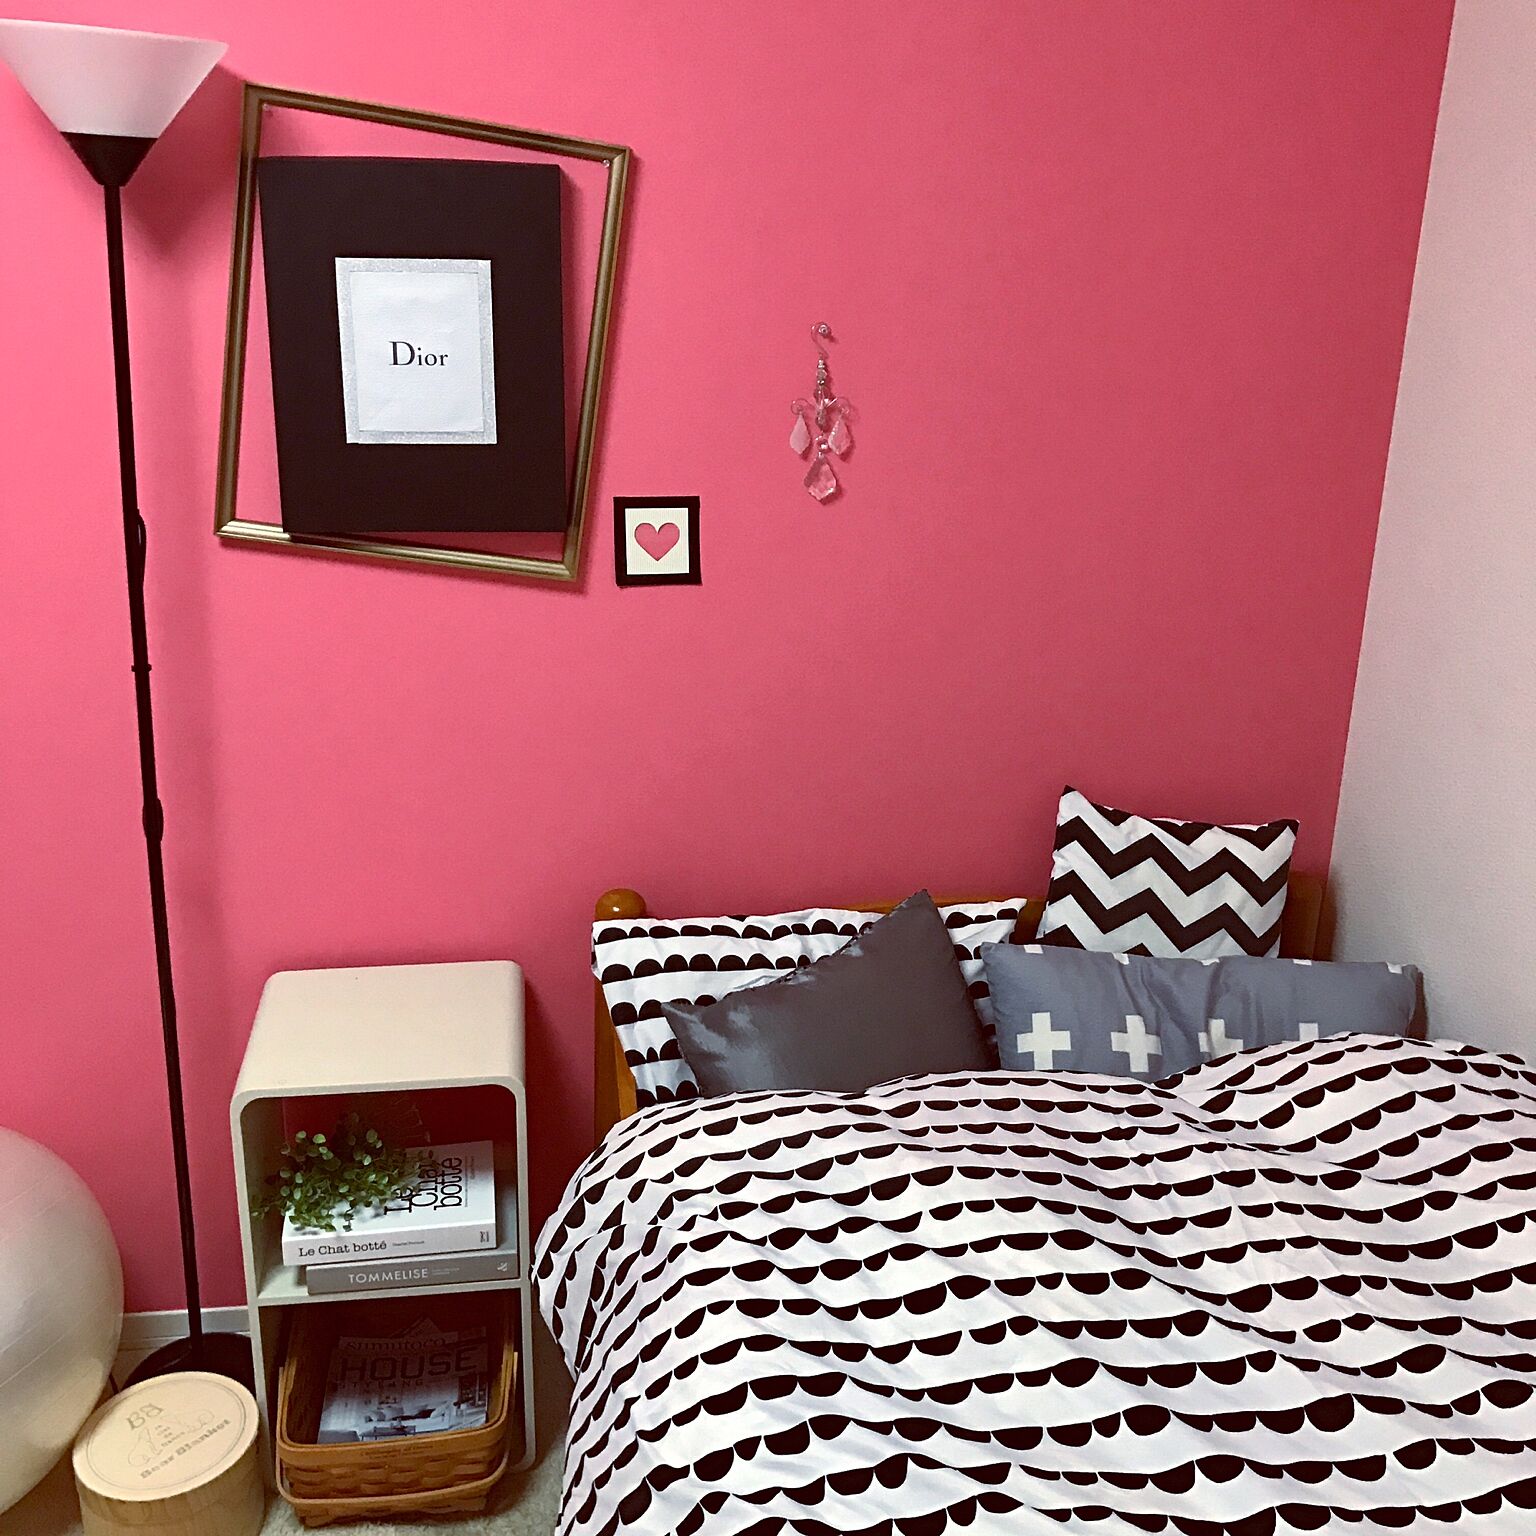 ピンク色のクロスが印象的なお部屋です。ダイソーの掛け布団カバーは６００円のお手頃価格ですが、北欧テイストのオシャレなインテリアにコーディネートされています。